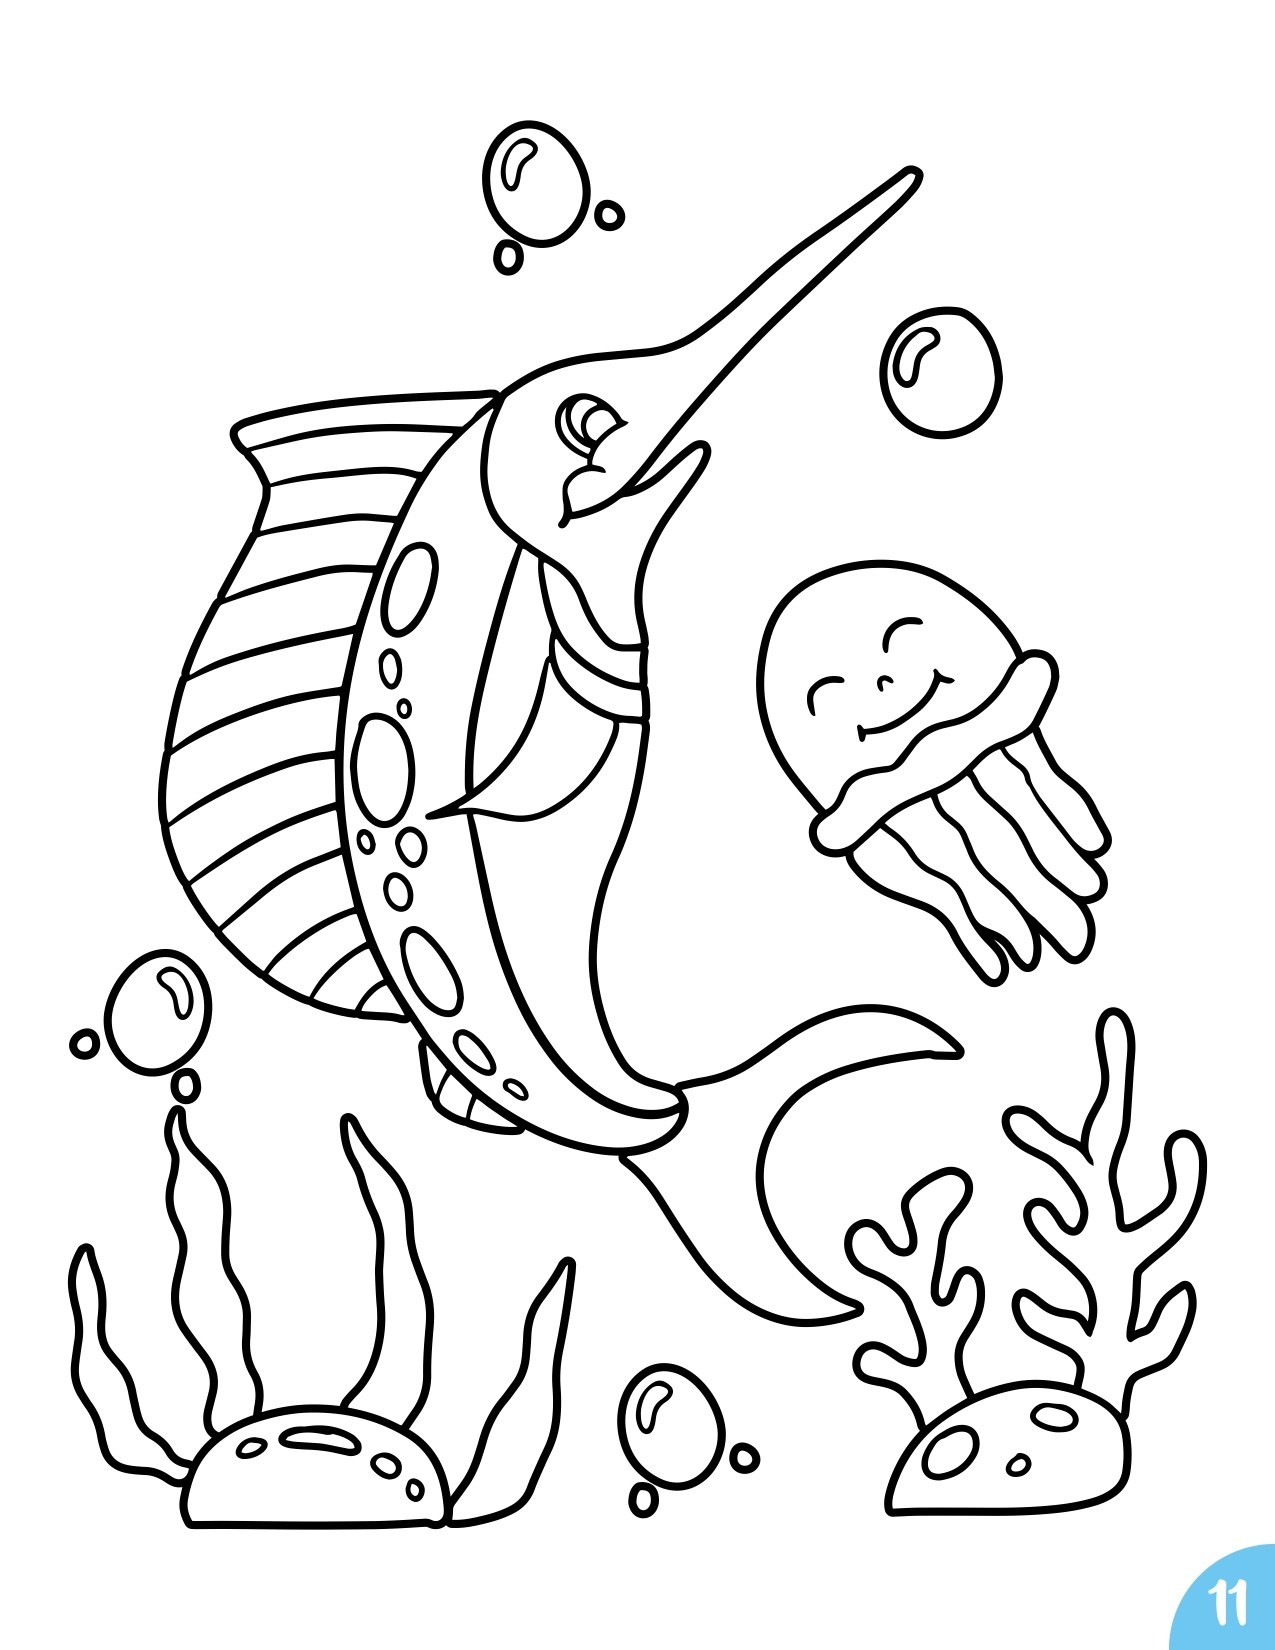 Disegno da colorare di pesce spada cartoon per bambini